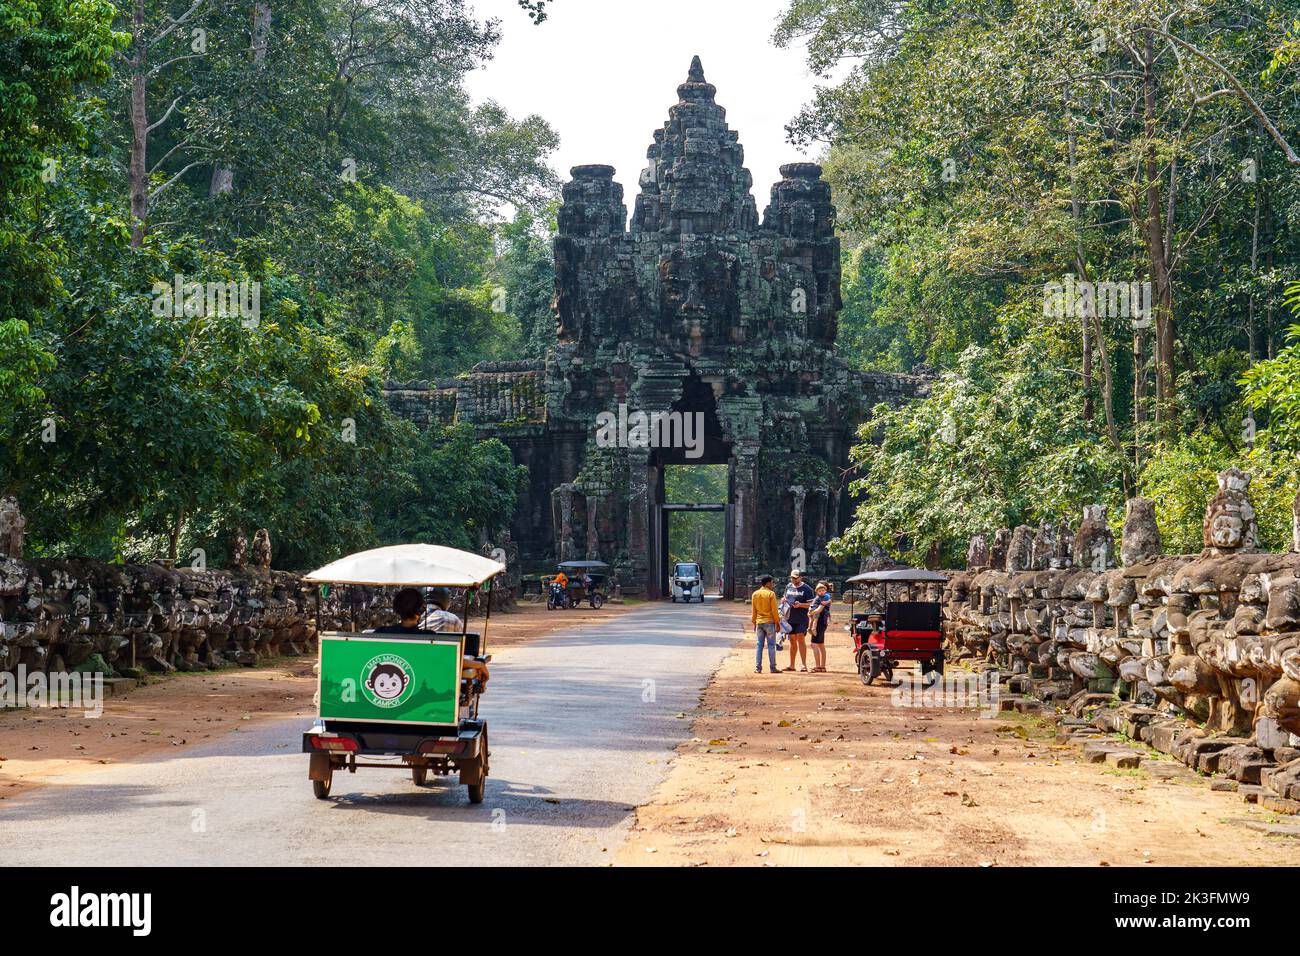 Camboya. Siem Riep. El parque arqueológico de Angkor. Tuk tuk que lleva a los turistas a Bayon Templo del siglo 12th Hindú Templo Foto de stock